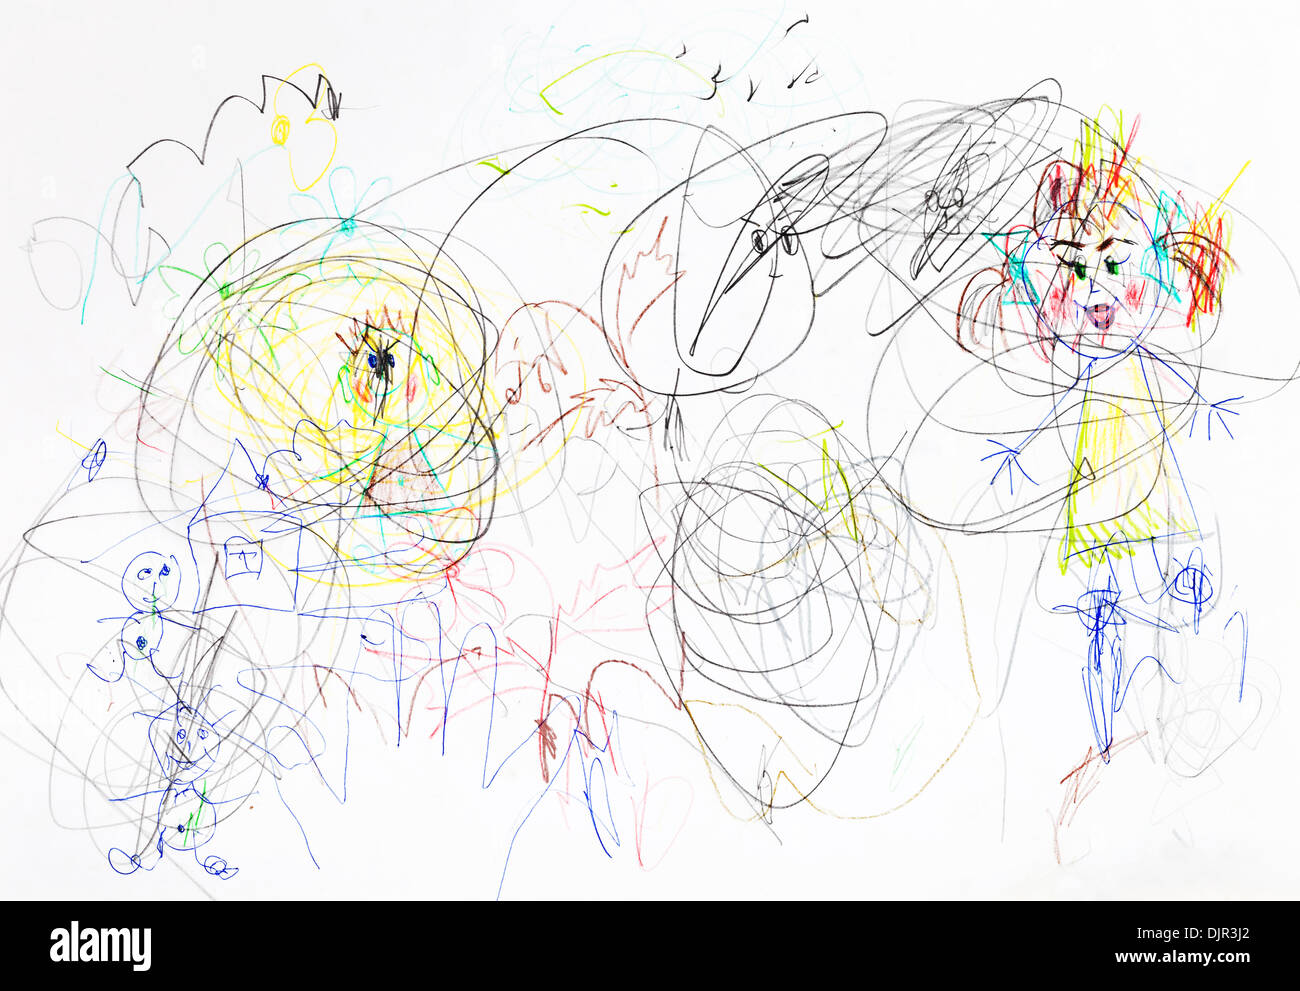 Kinder zeichnen - Chaos bei Familie Erziehung Stockfoto